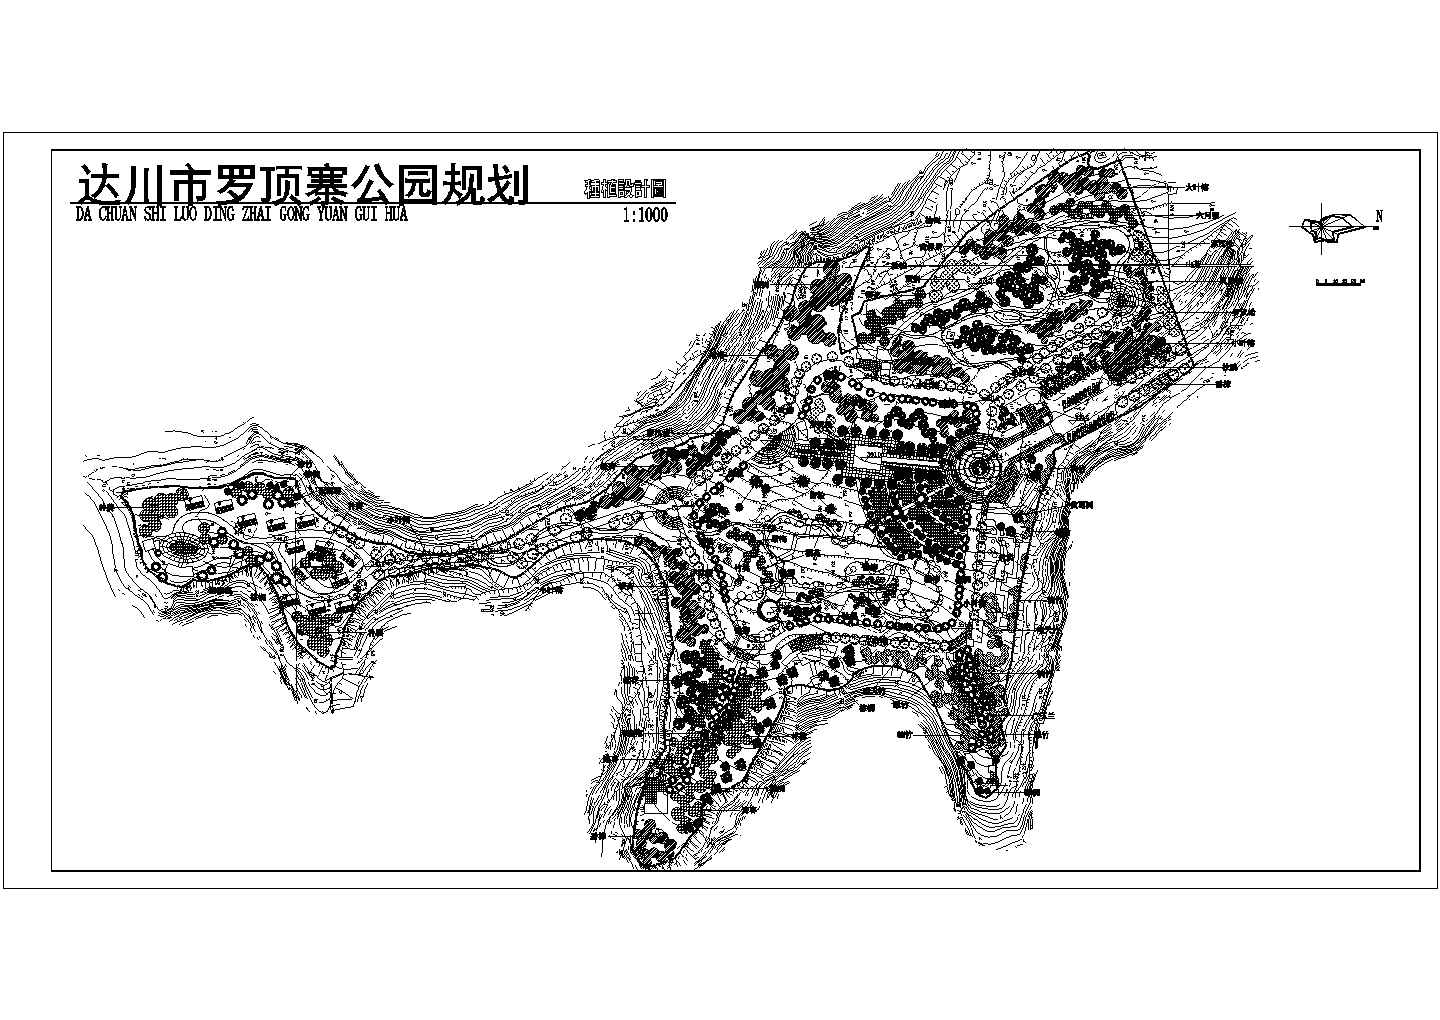 达川市罗顶寨公园总规划平面图（景观布置图）